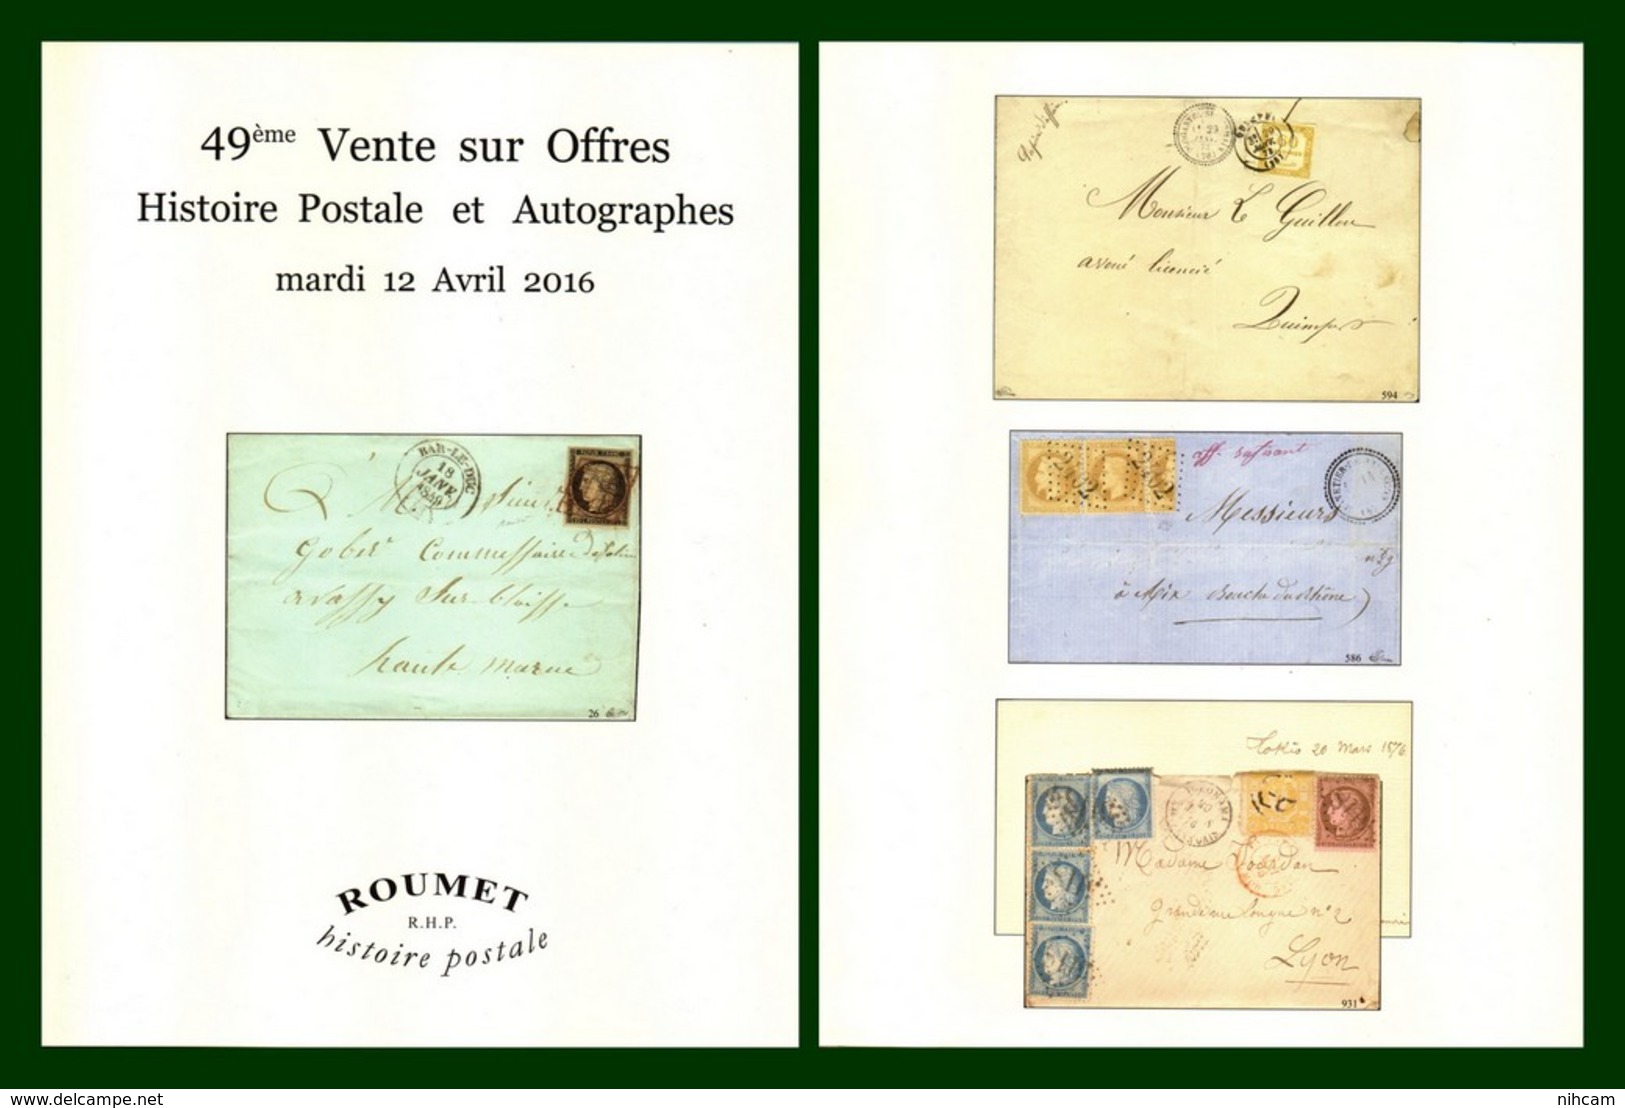 Catalogue 49éme Vente Sur Offres Roumet 2016 Histoire Postale Et Autographes - Catalogues For Auction Houses